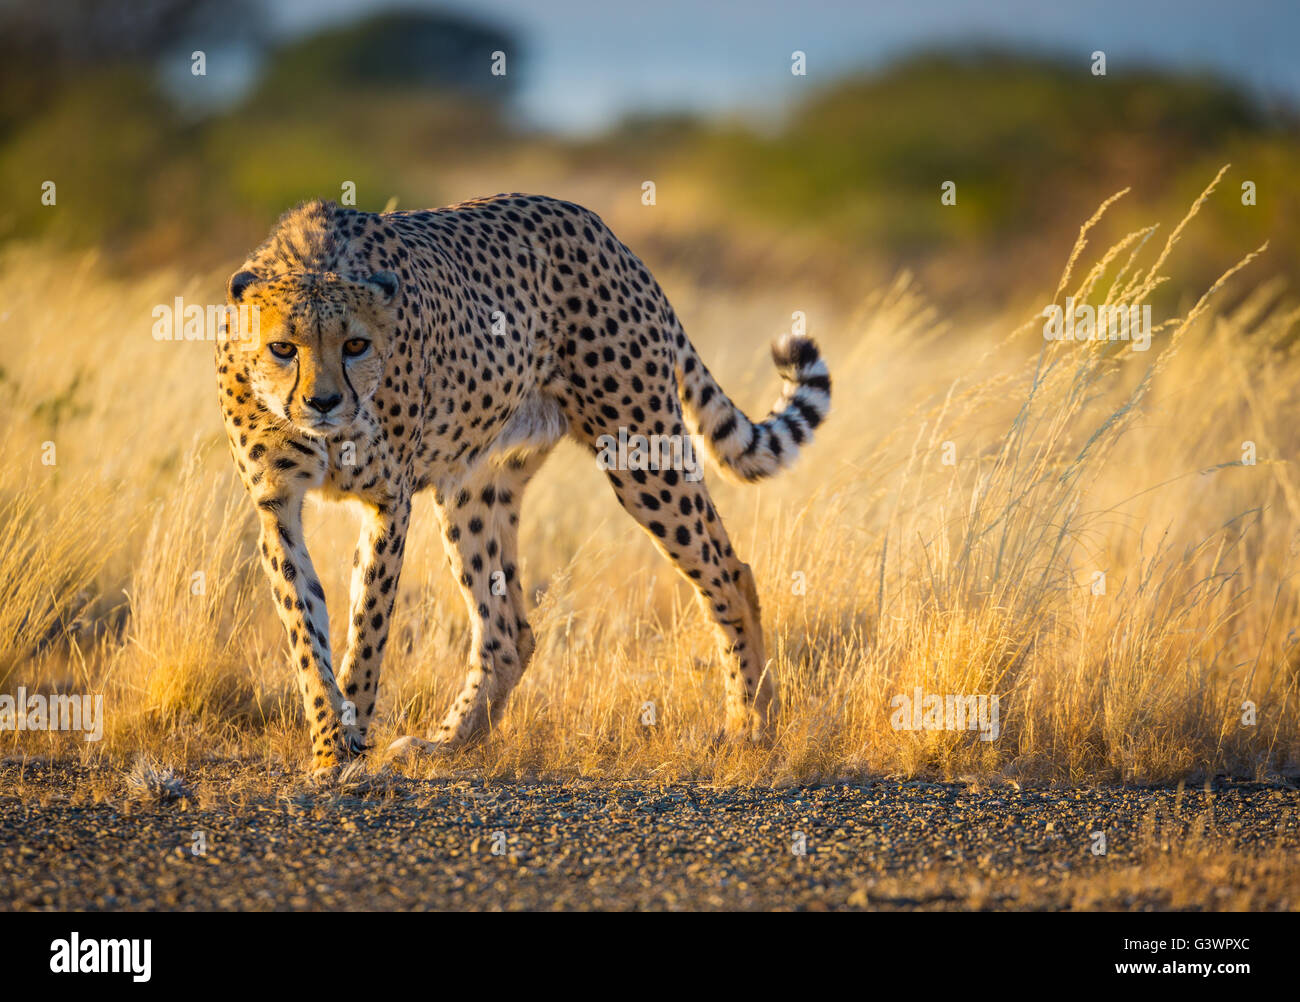 Der Gepard (Acinonyx Jubatus) ist eine große Katze, die vor allem im östlichen und südlichen Afrika auftritt. Stockfoto